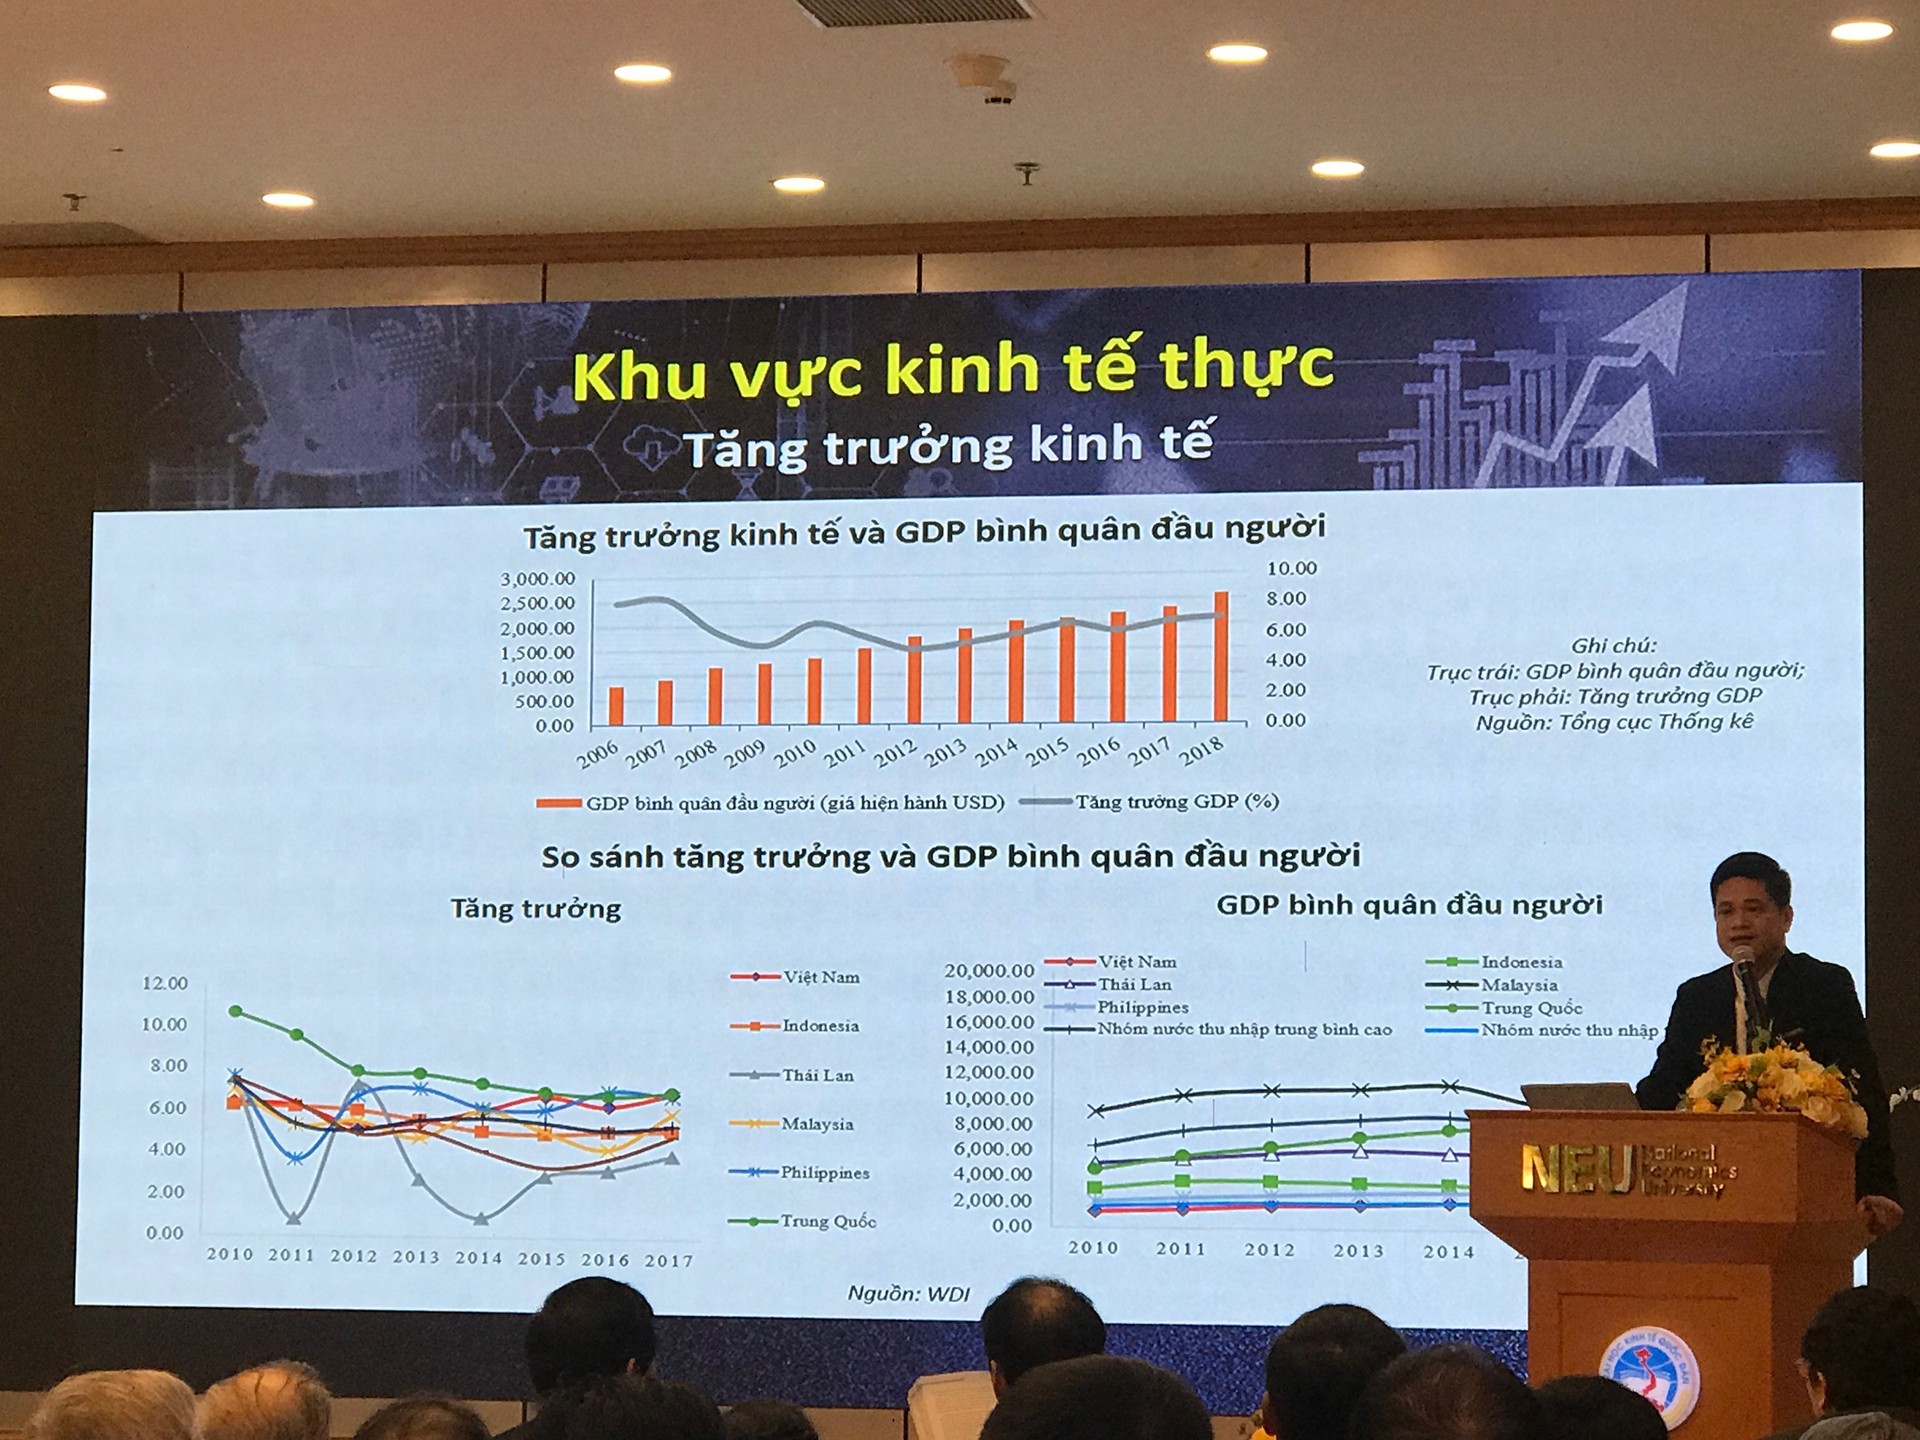 Kinh tế Việt Nam năm 2018 và triển vọng năm 2019.